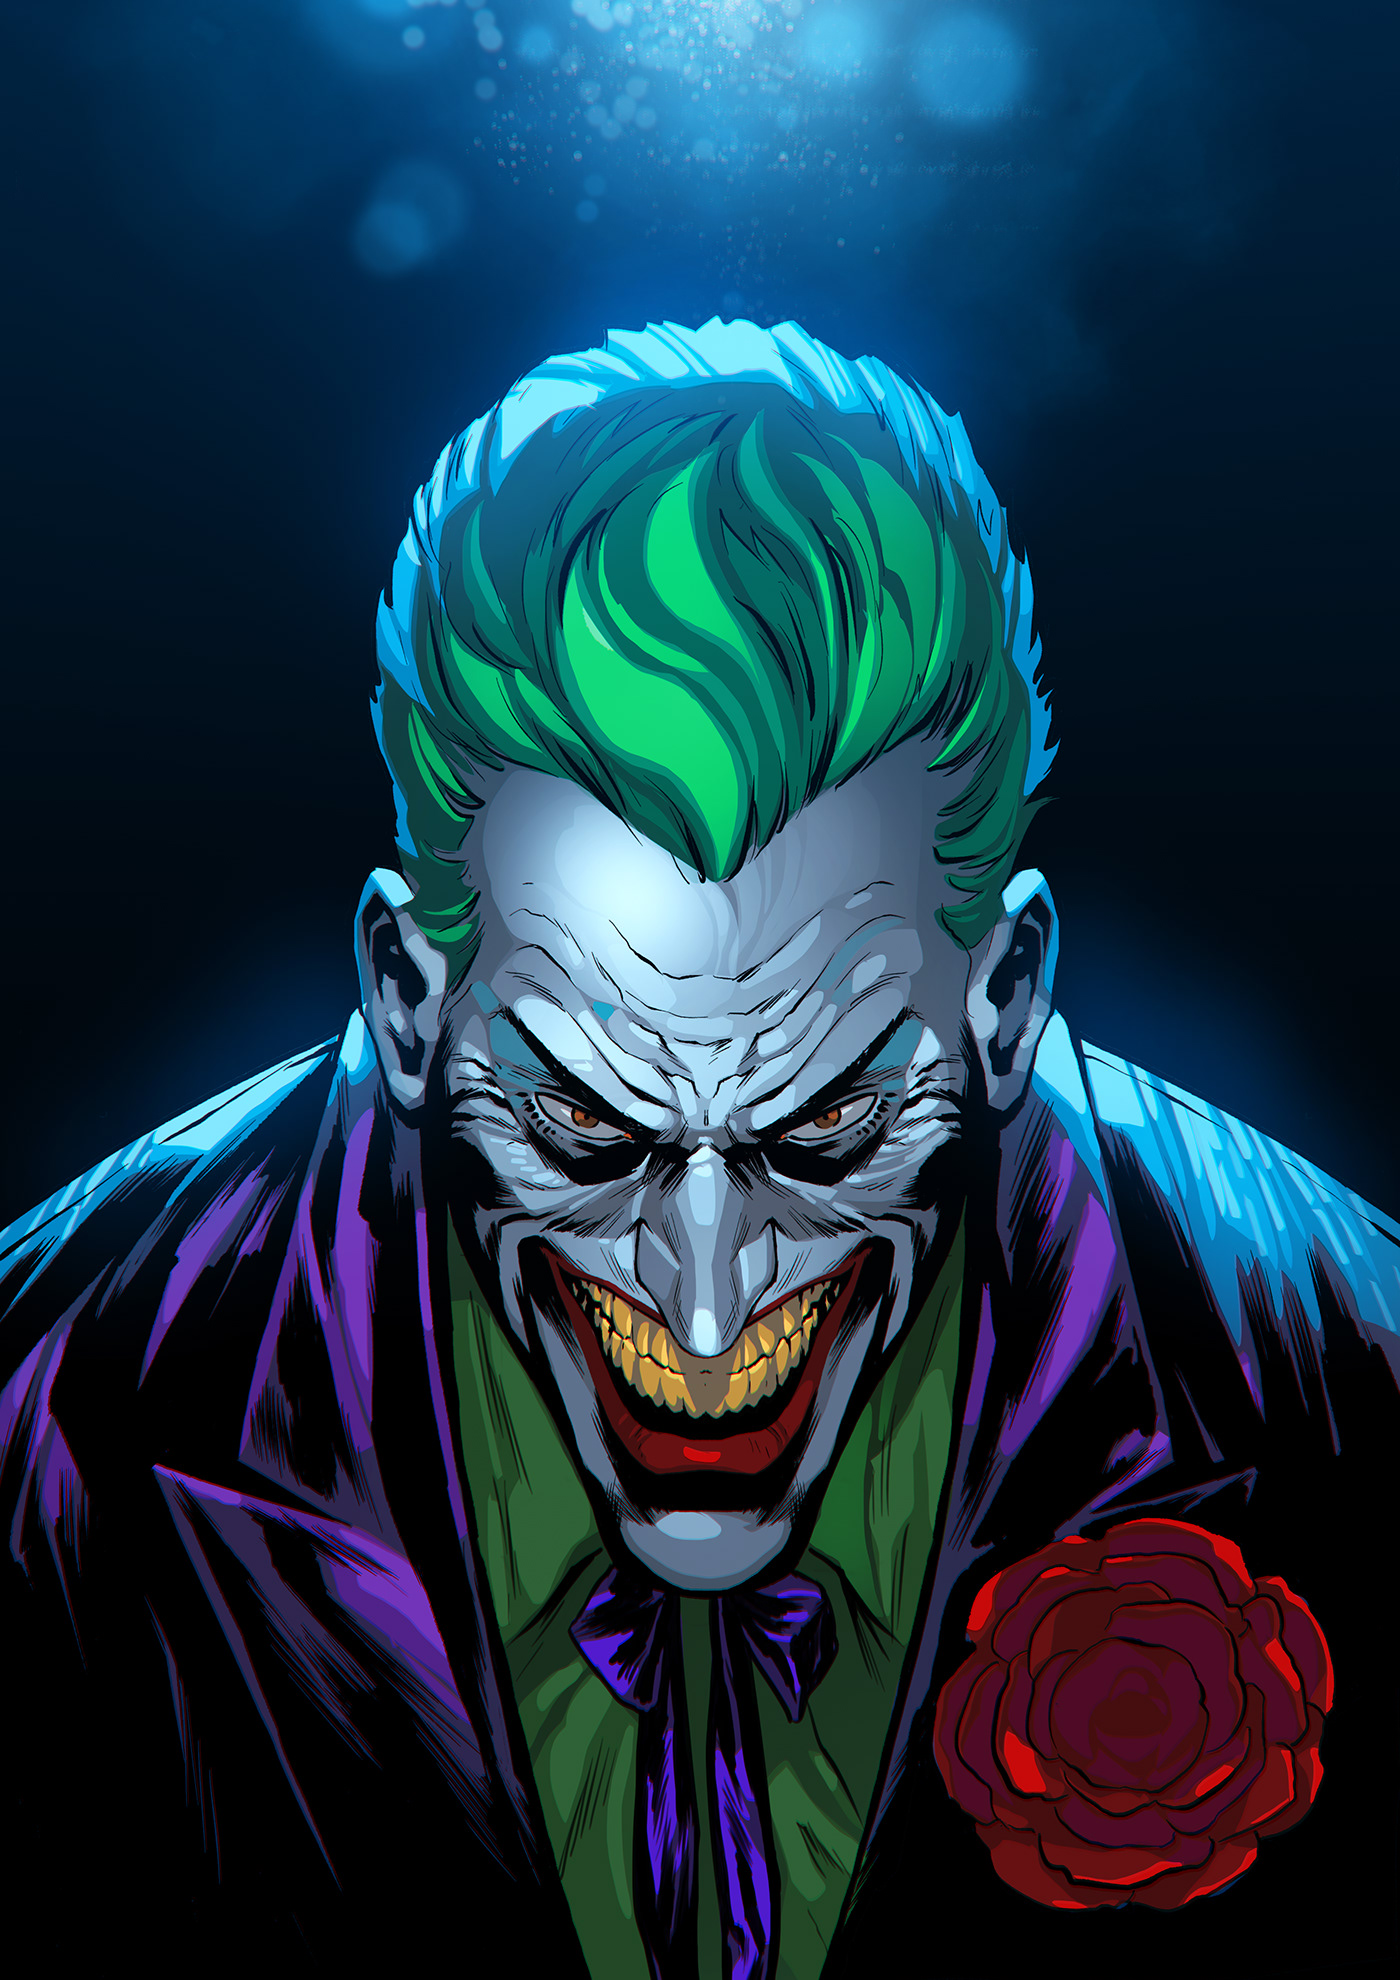 Joker headshot. on Behance